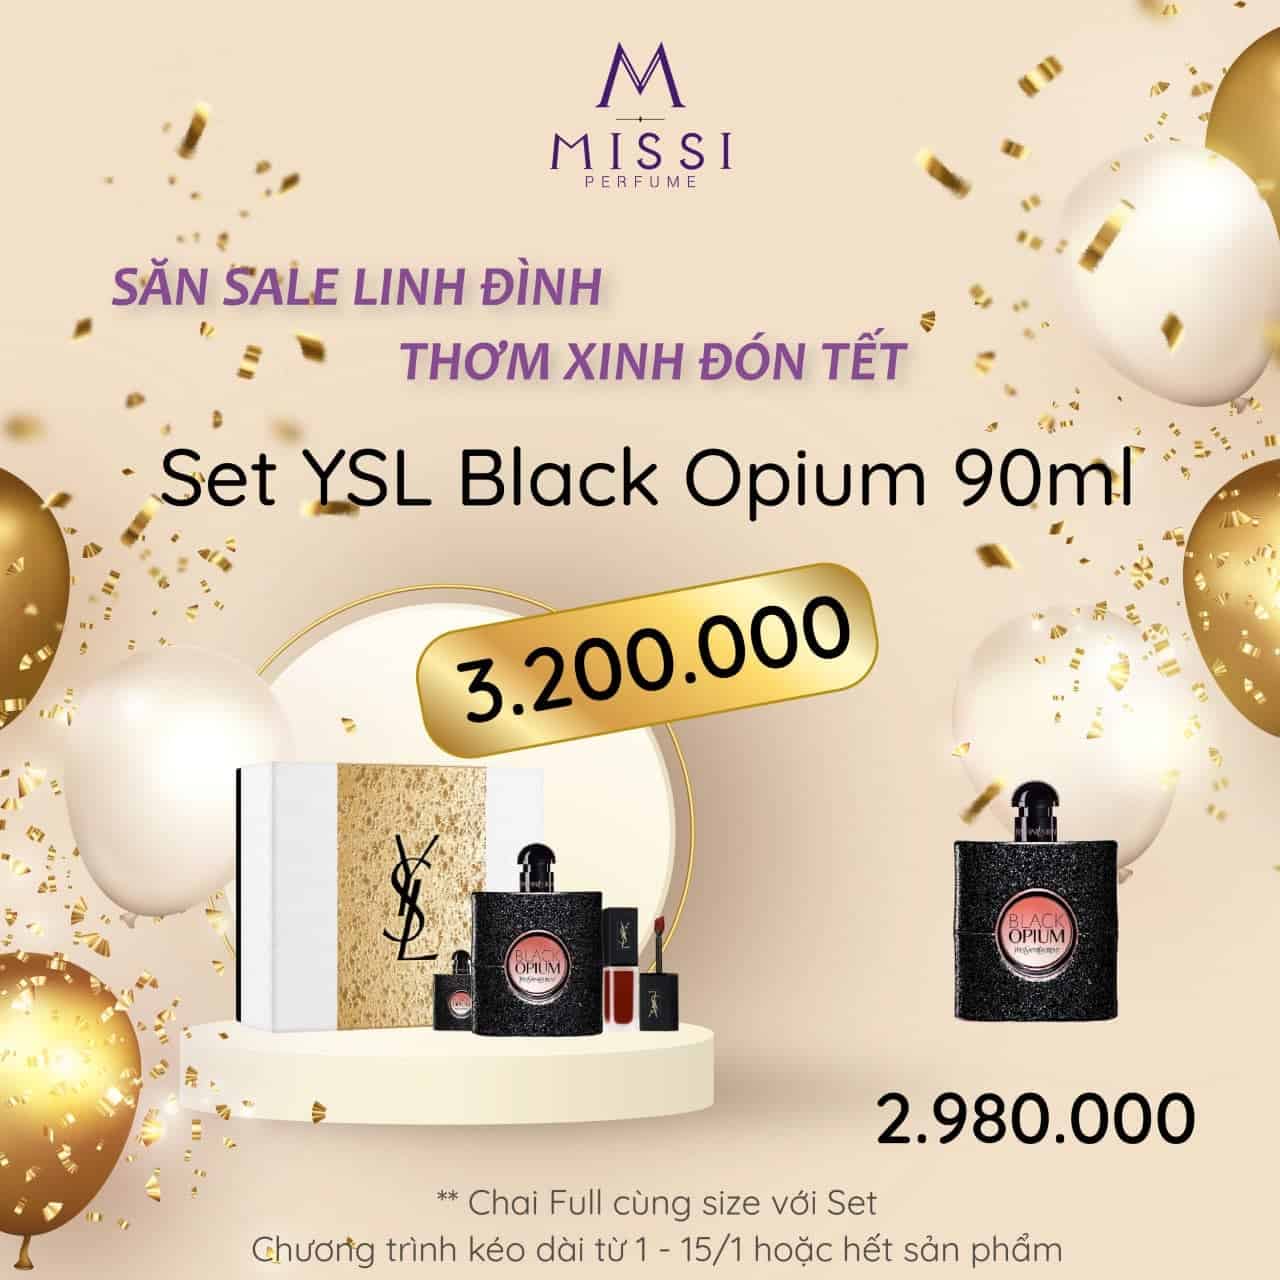 Set YSL Black Opium 90ml Missi Perfume